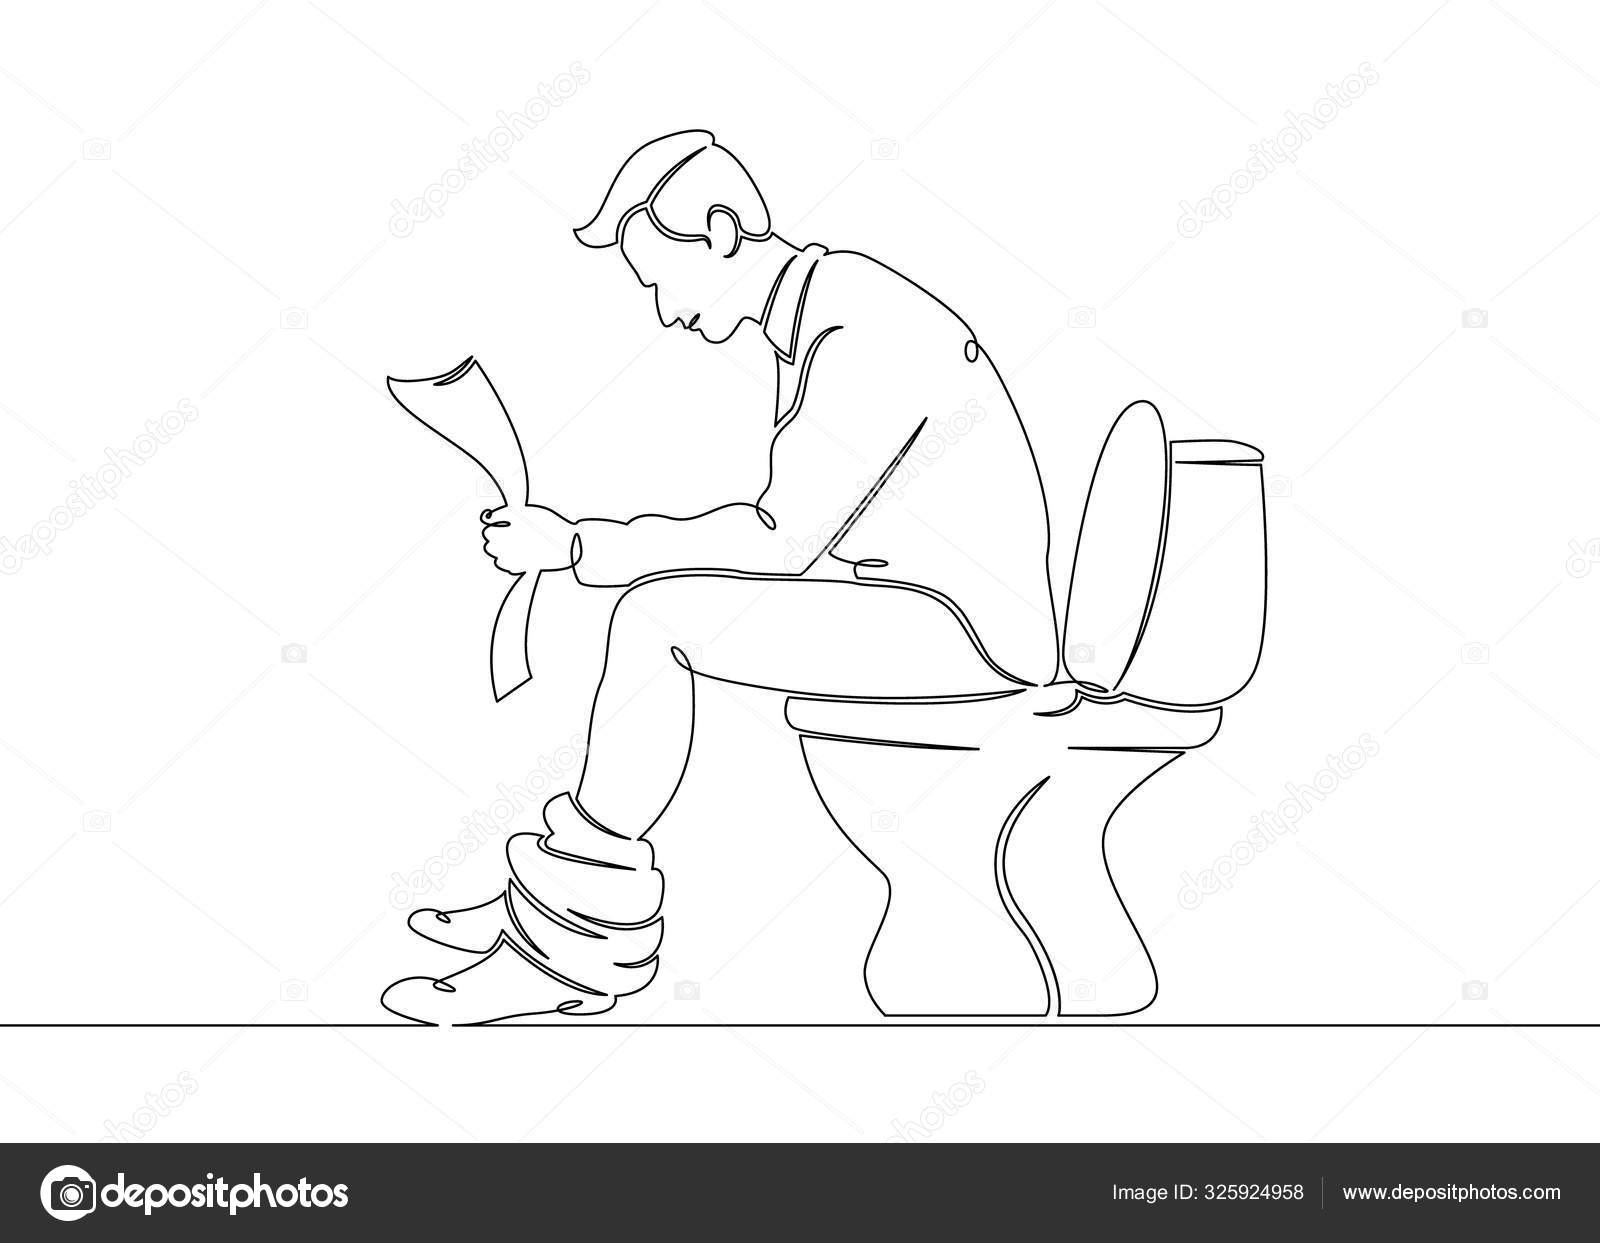 Муж сидит в туалете. Чел сидит на унитазе. Человечек сидит на унитазе.